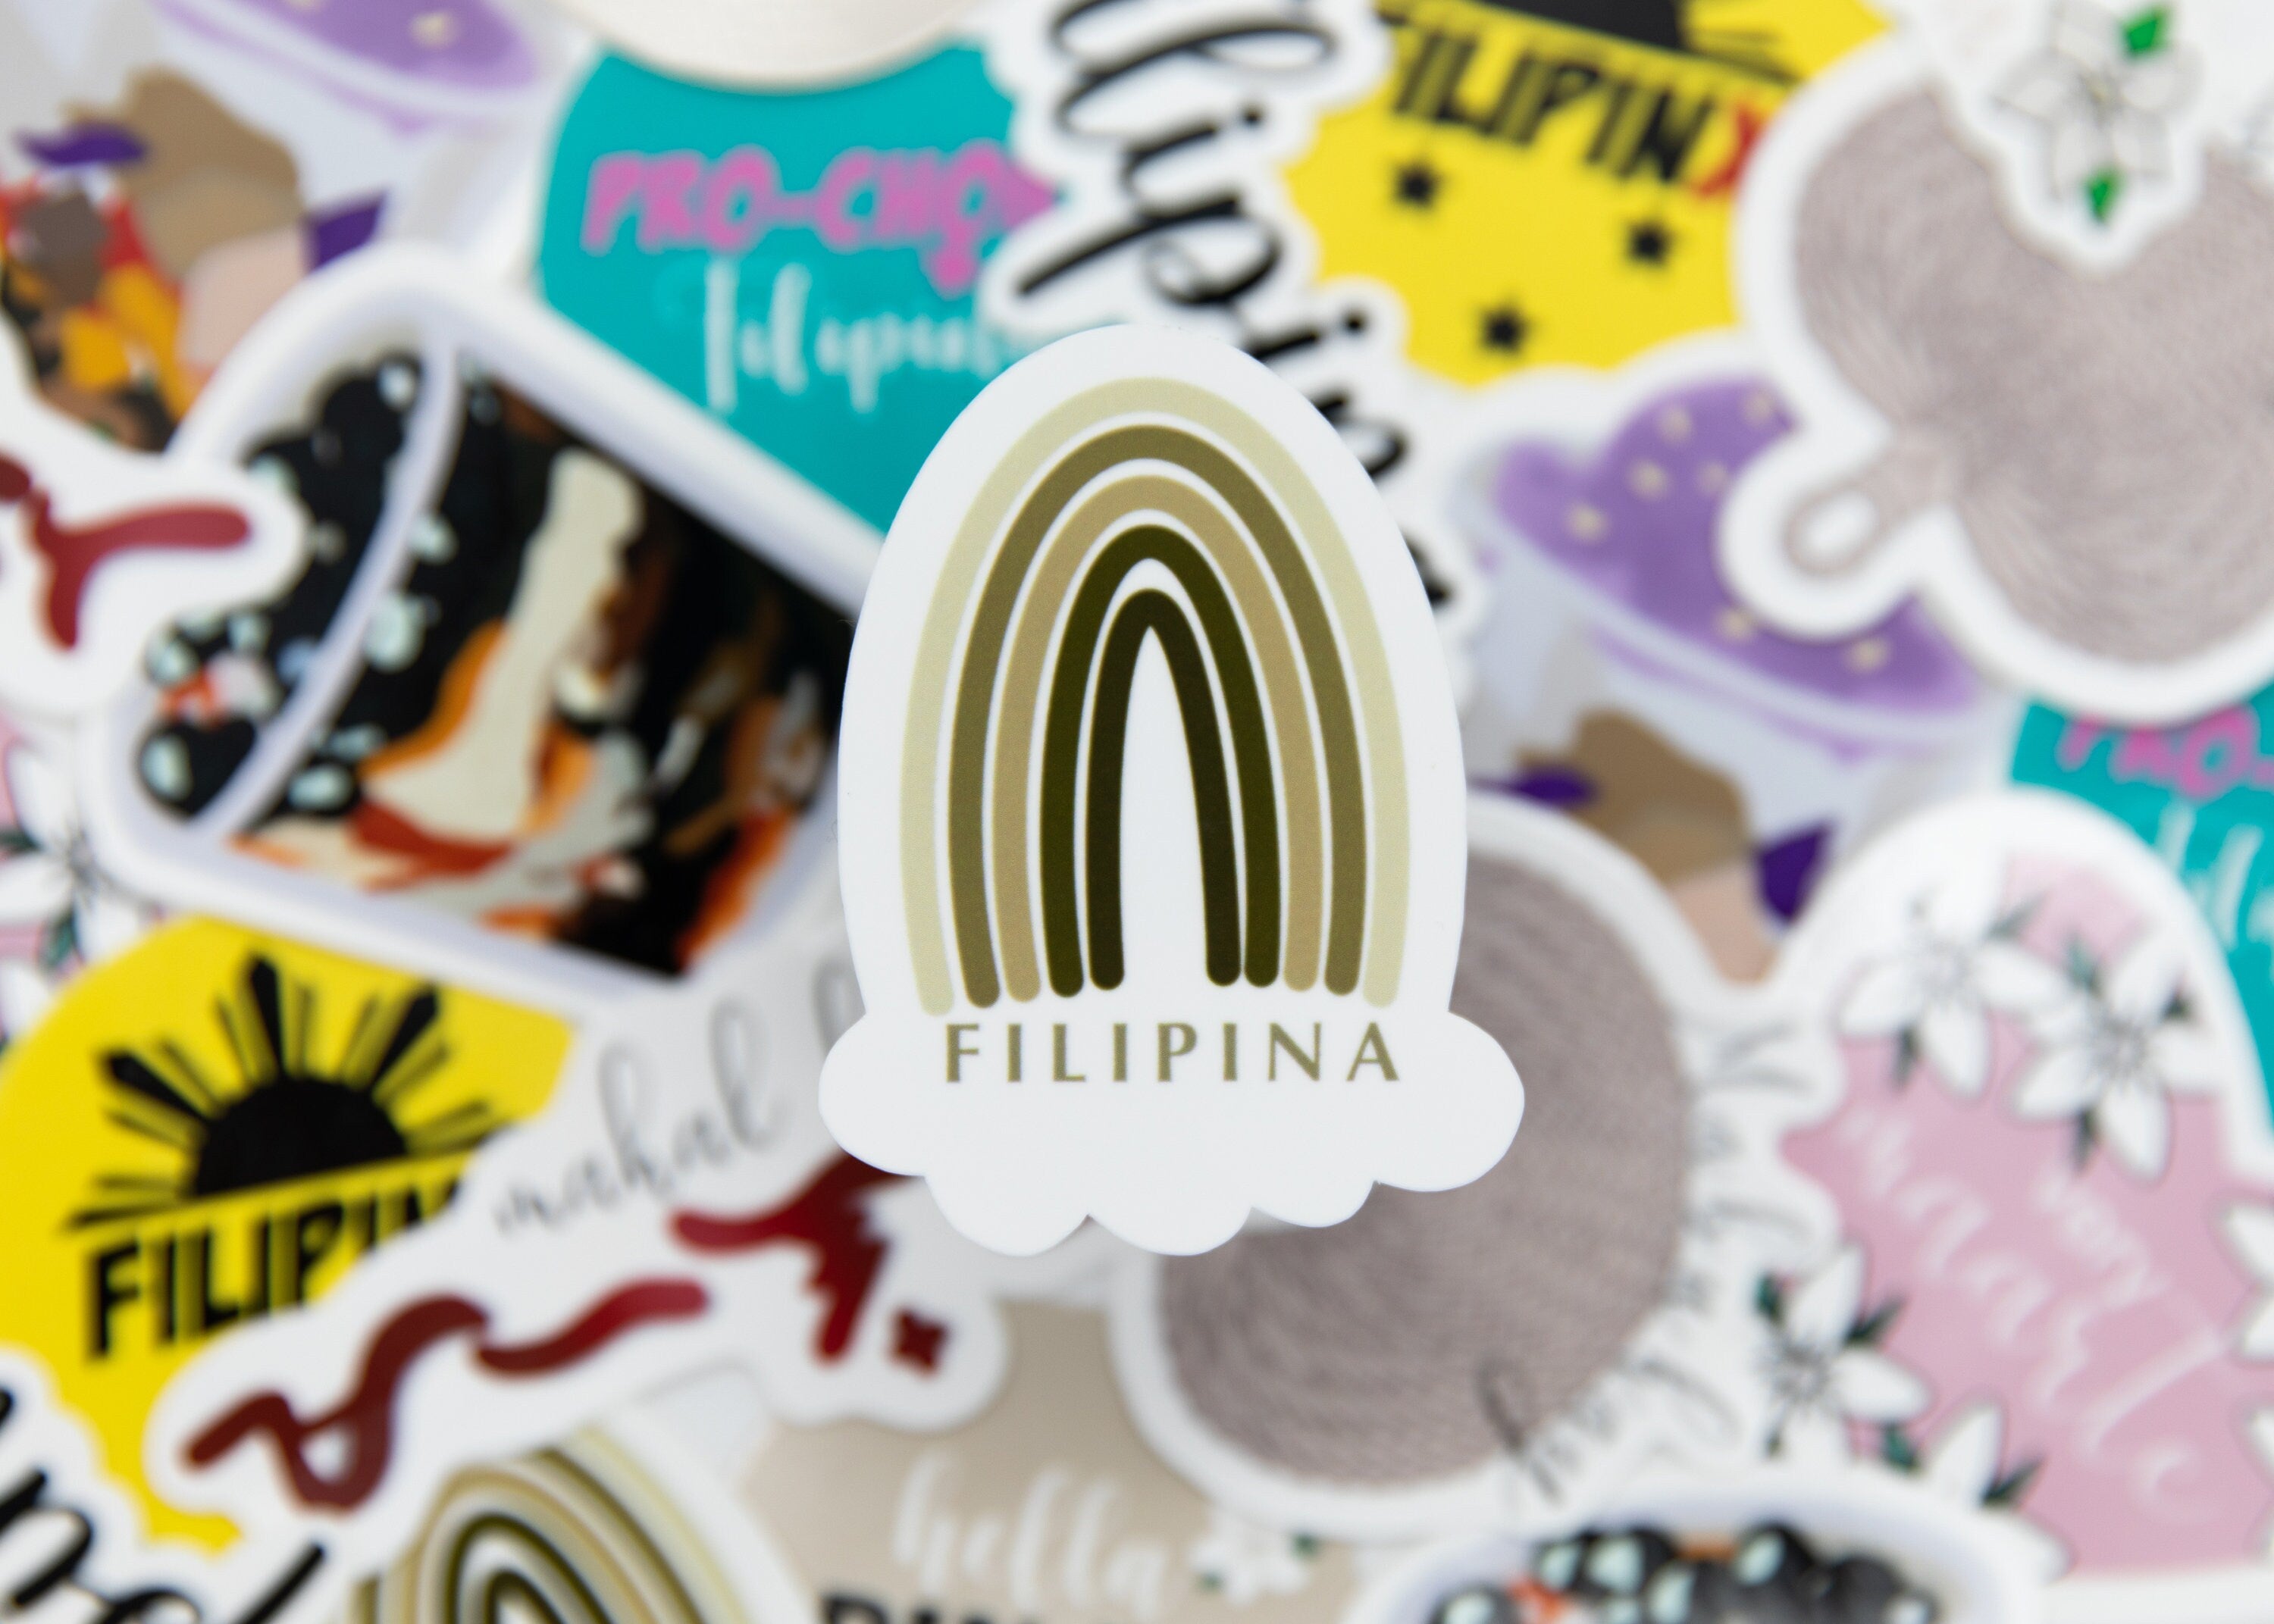 Mie Makes Filipina Sticker, Filipina Rainbow Sticker, Filipina Sticker, Filipino Sticker, Pinay Sticker, Filipina Decal, Philippines, Pinay Rainbow